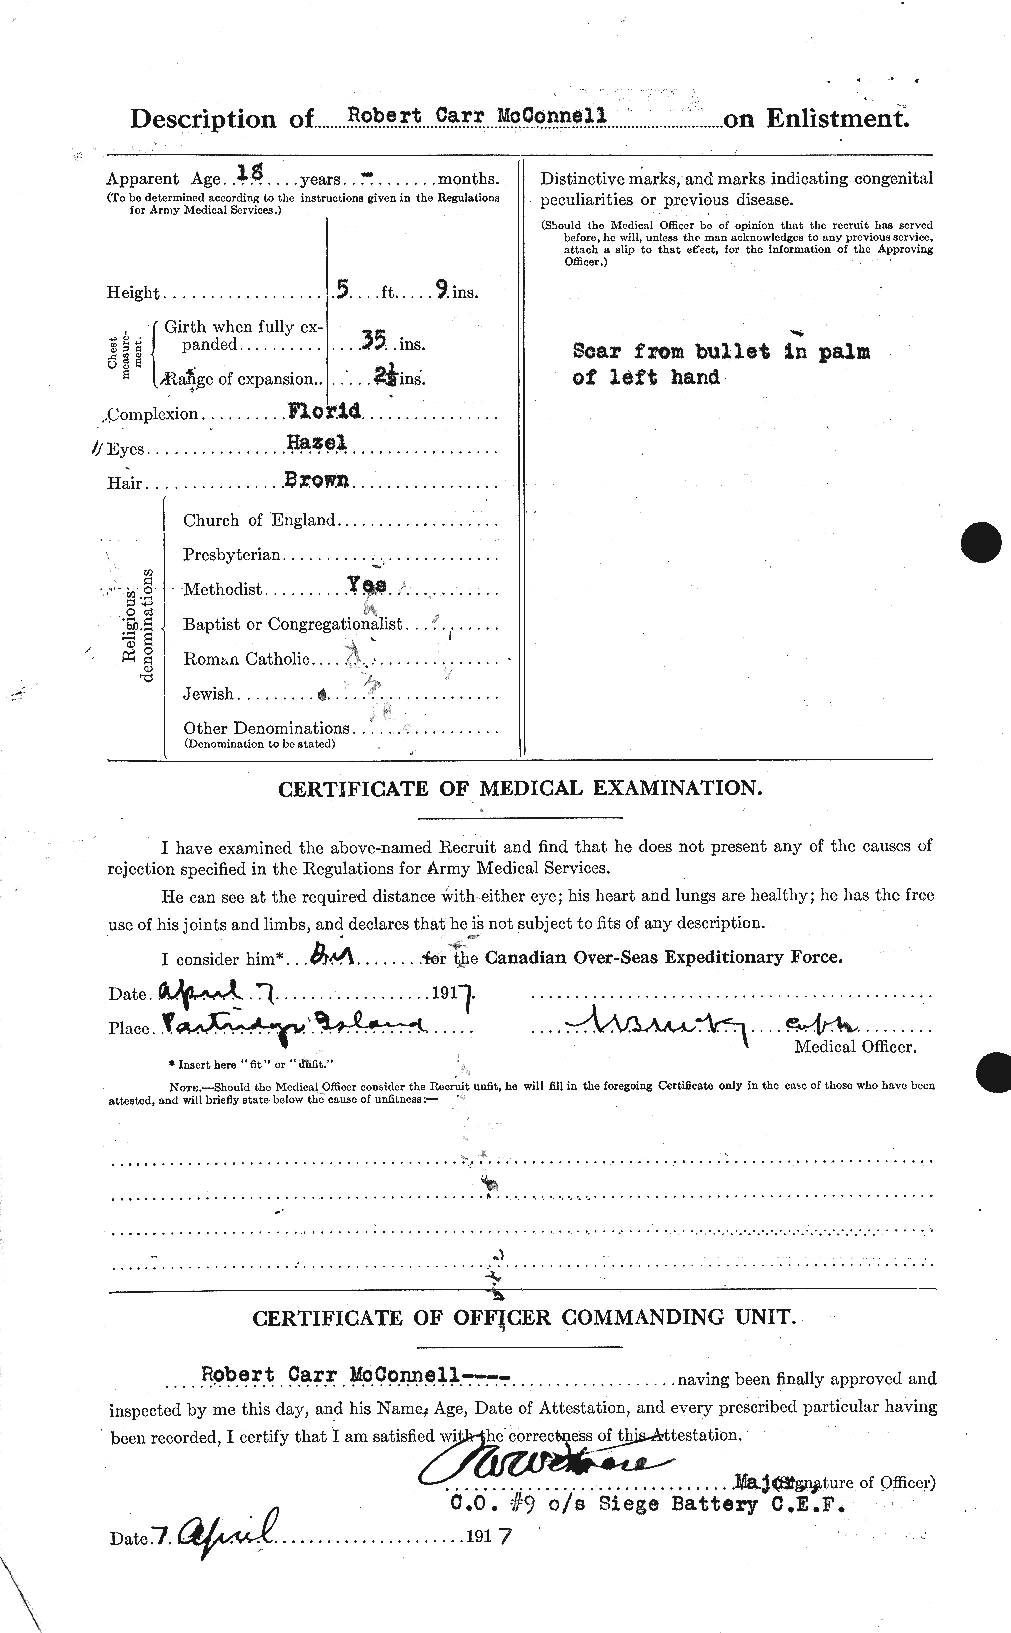 Dossiers du Personnel de la Première Guerre mondiale - CEC 134398b